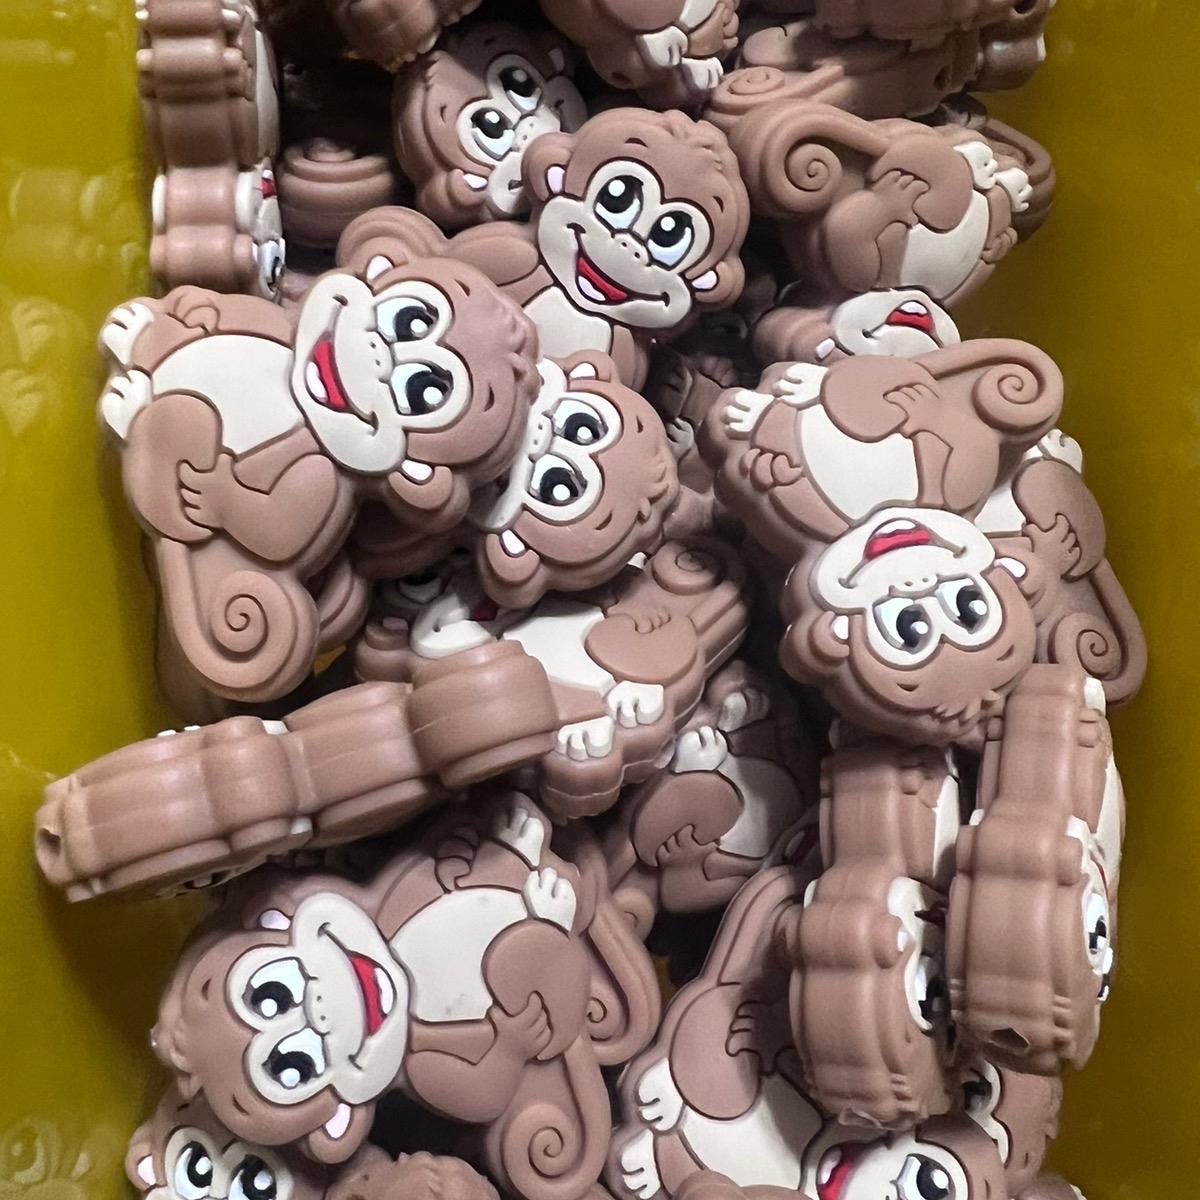 Snap Beads - 16 Pcs - Cheeky Monkey Toys